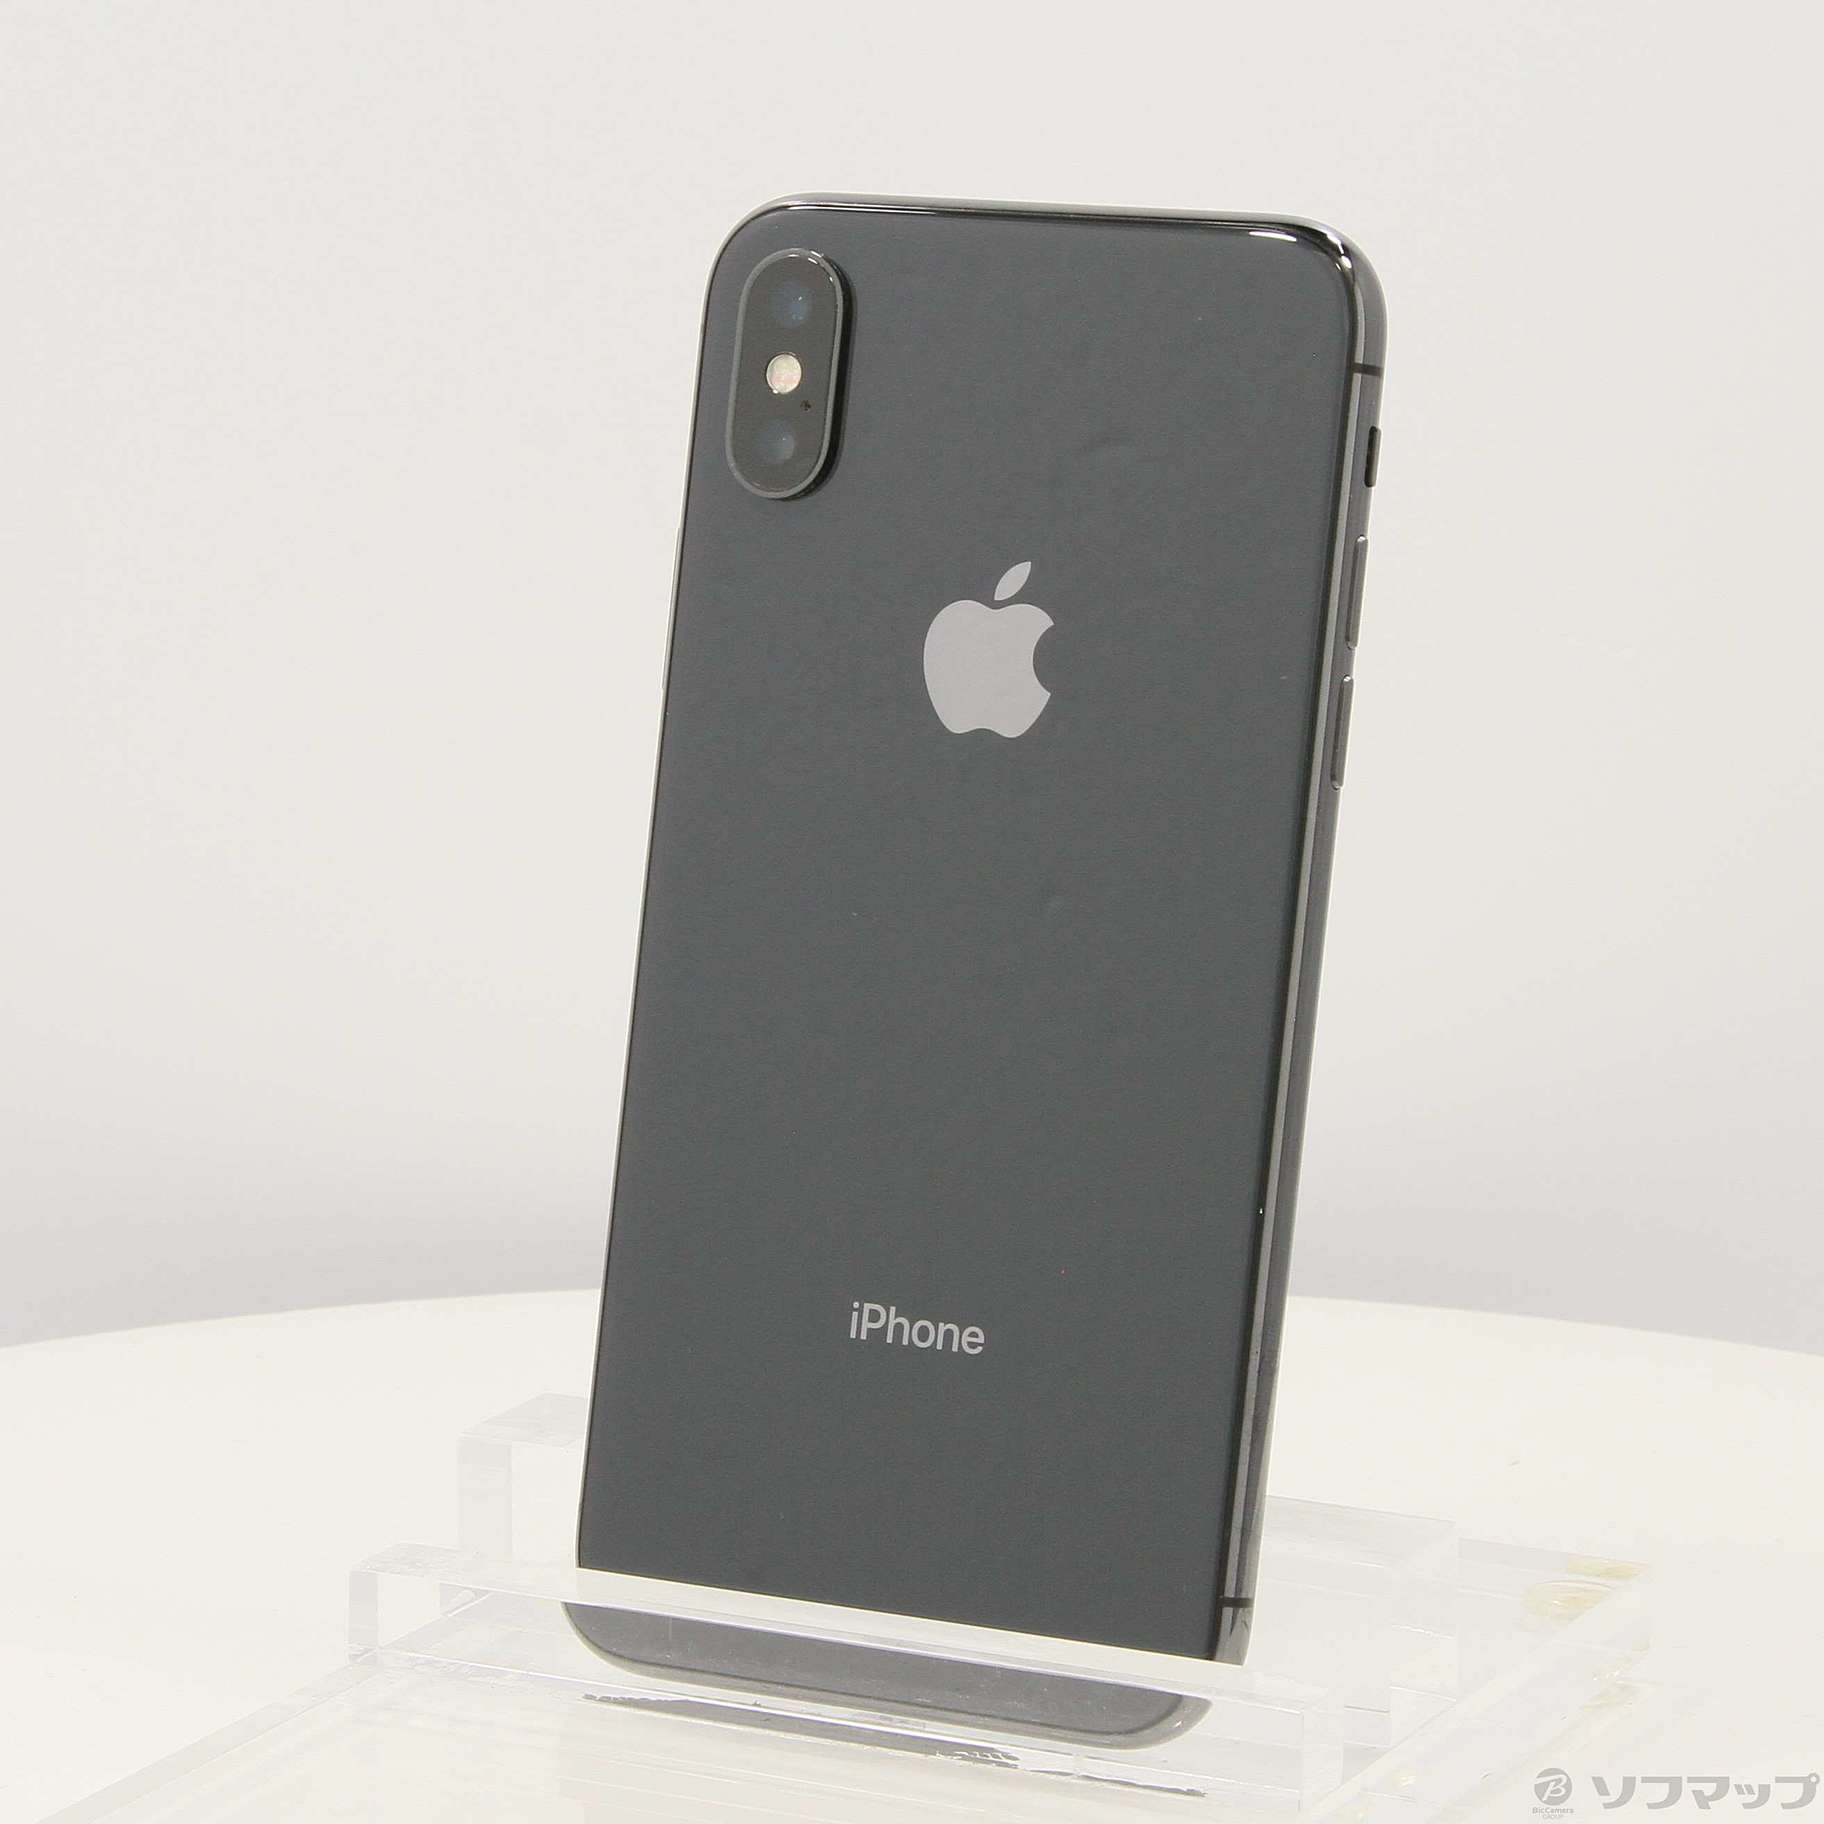 iPhone X 256gb スペースグレイ SIMフリー - 携帯電話本体